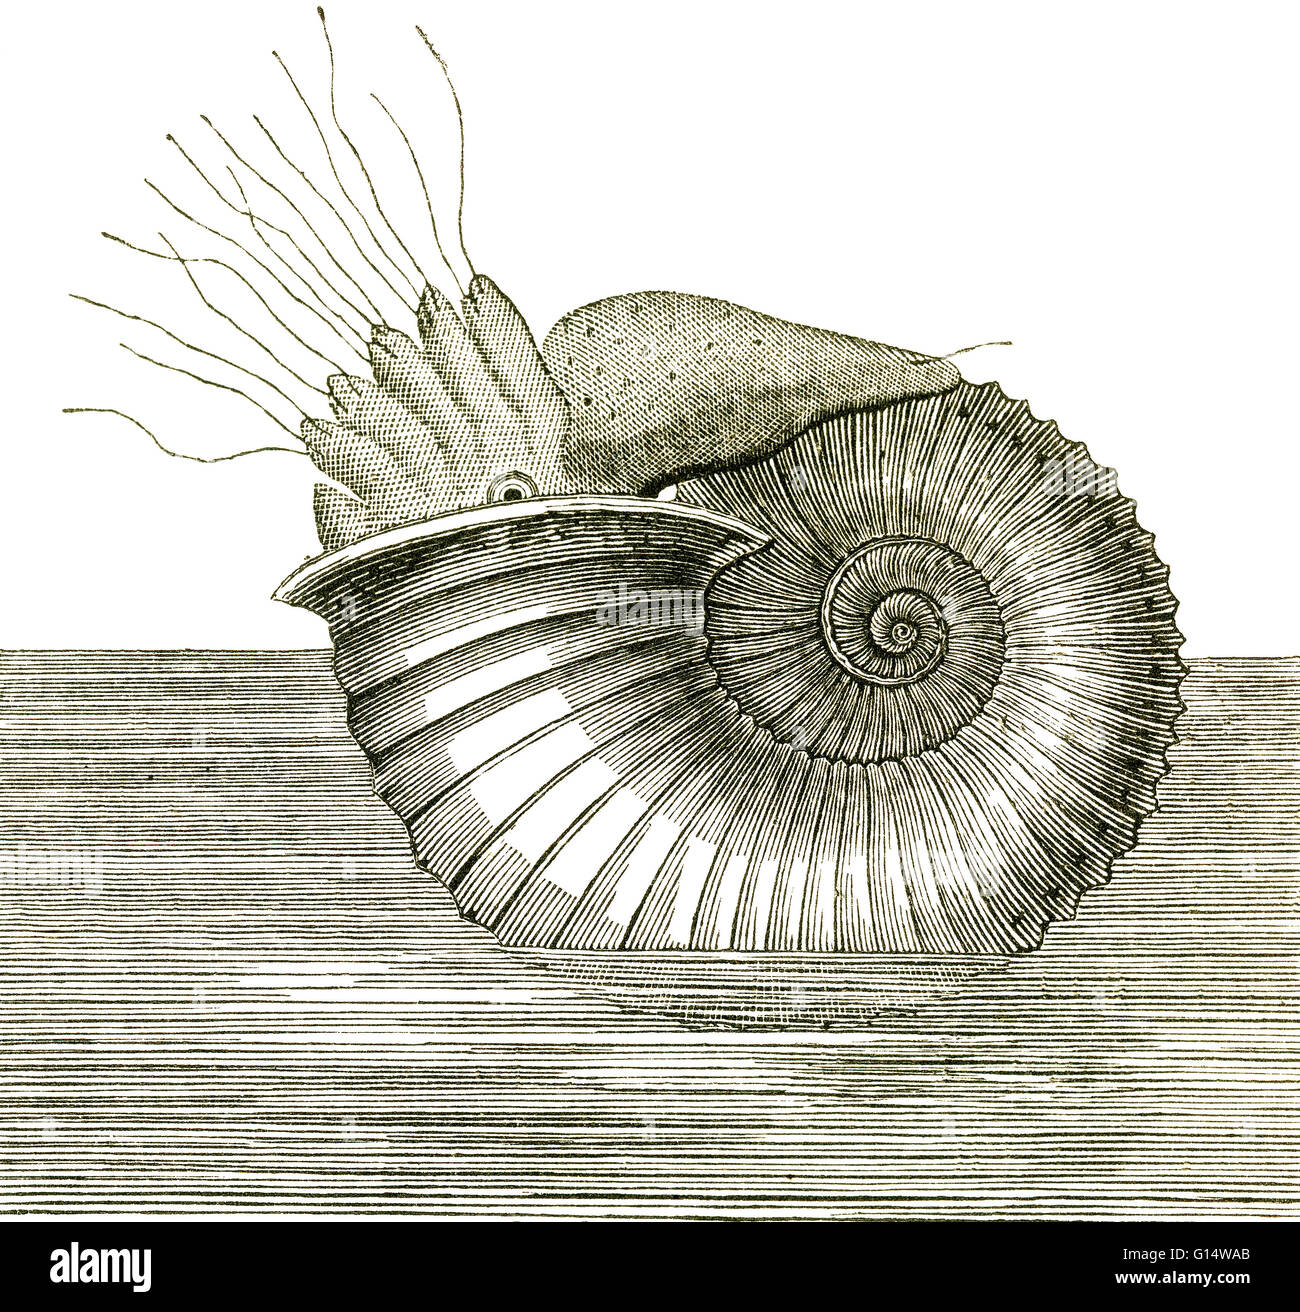 Illustration eines Ammoniten aus Louis Figuiers die Welt vor der Sintflut, 1867 amerikanische Ausgabe.  Ammoniten waren sehr reichlich in der Jura-Zeit, aber ihre weichen Körper wurden nur selten in den Fossilien konserviert. Stockfoto